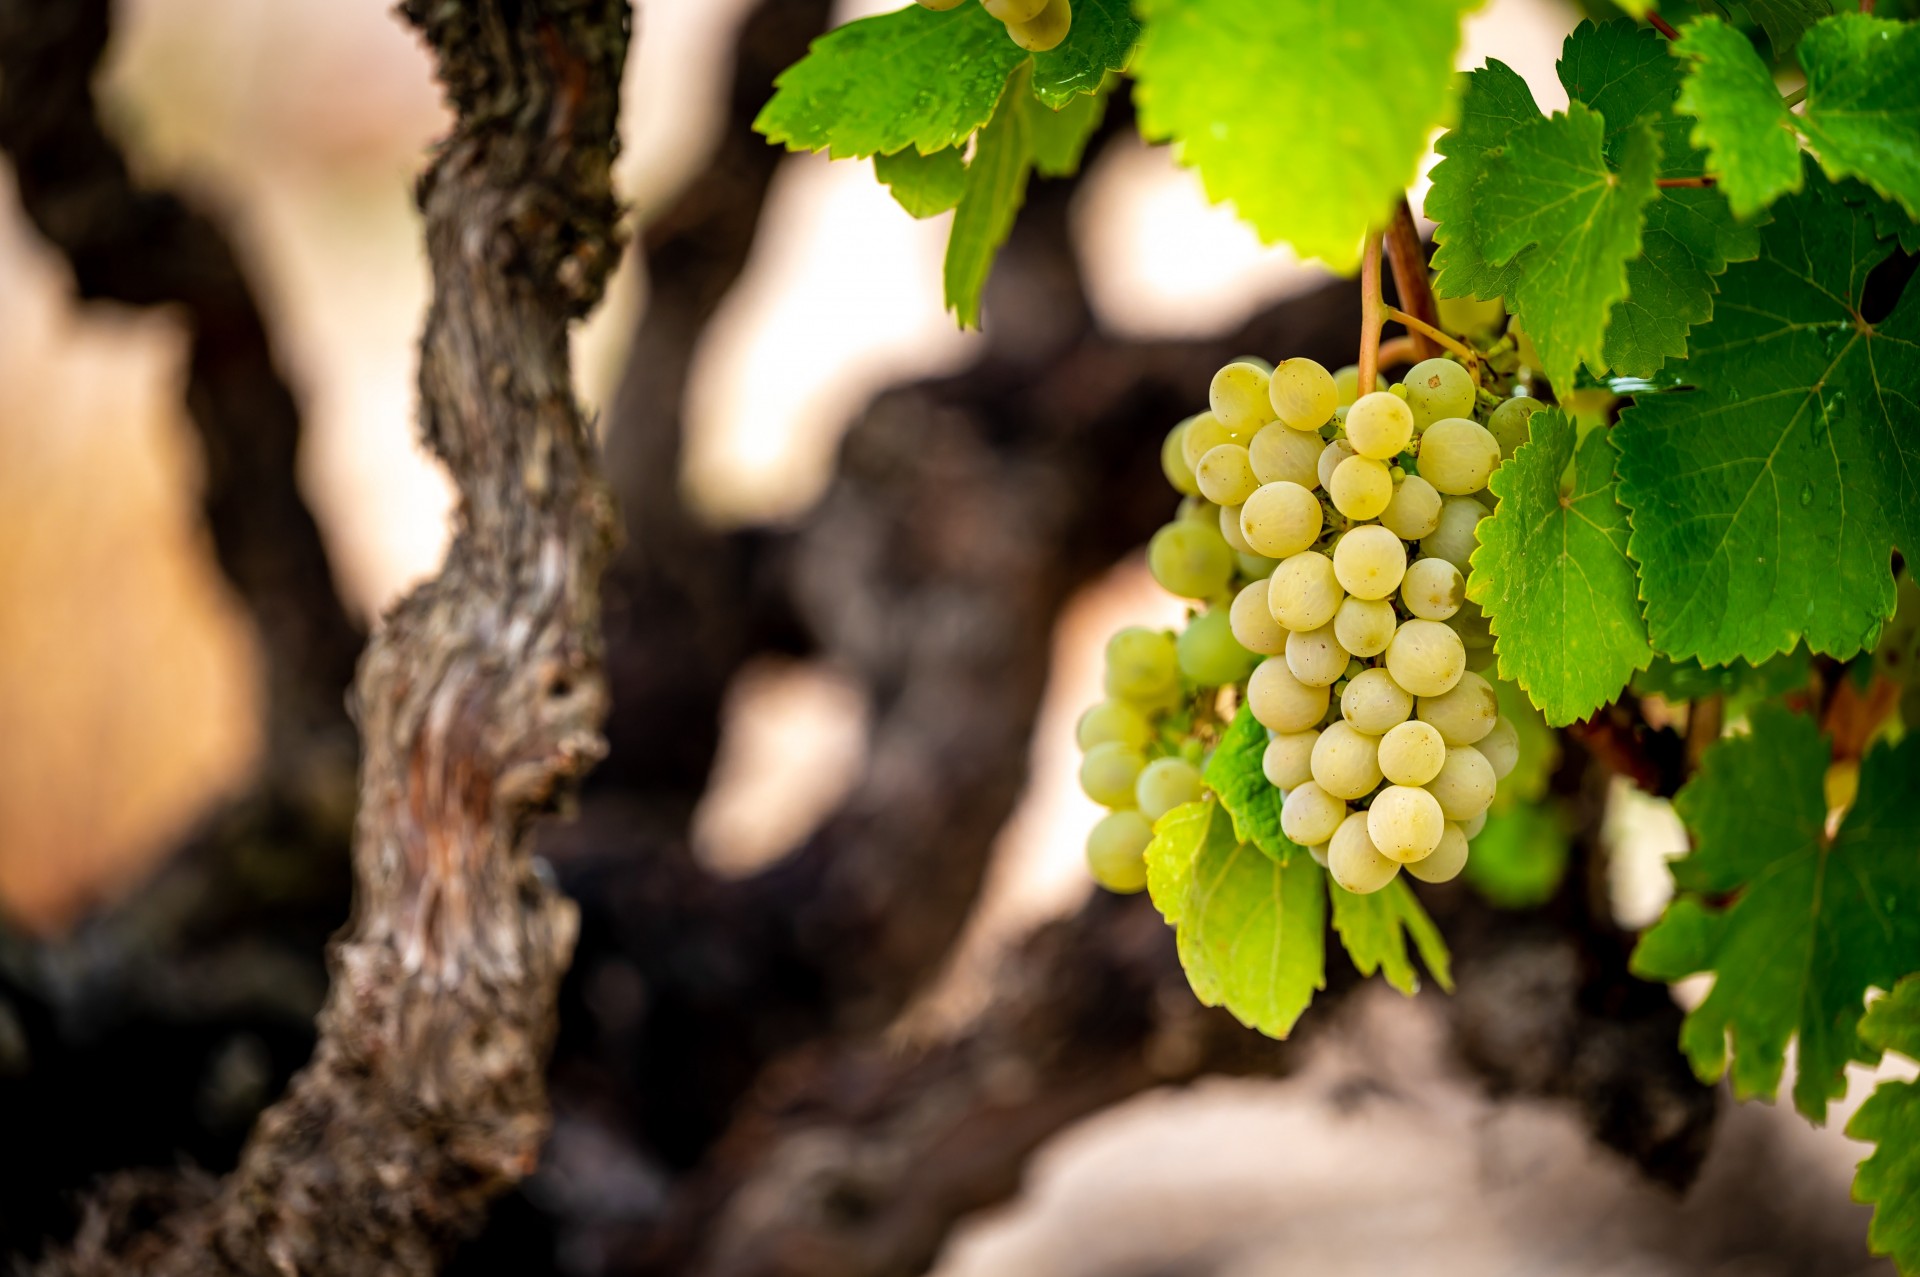 Un proyecto de I+D avanza en la mejora de la longevidad y la capacidad de envejecimiento de los vinos de la variedad verdejo de la D.O. Rueda - 0